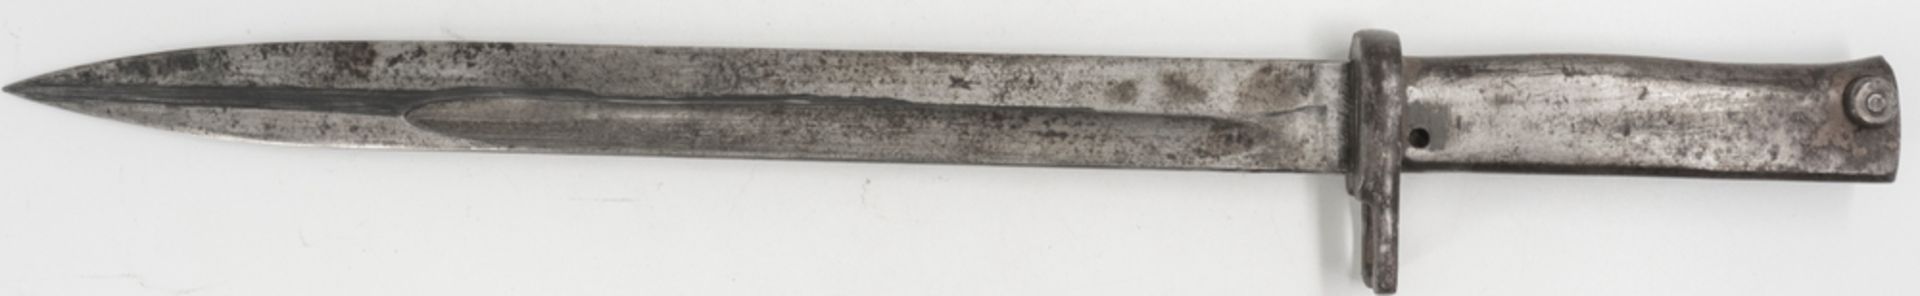 Ersatz - Seitengewehr, 1. Weltkrieg, Metallgriff, Metallscheide, mit Tragekoppel. Klingenlänge: - Image 2 of 4